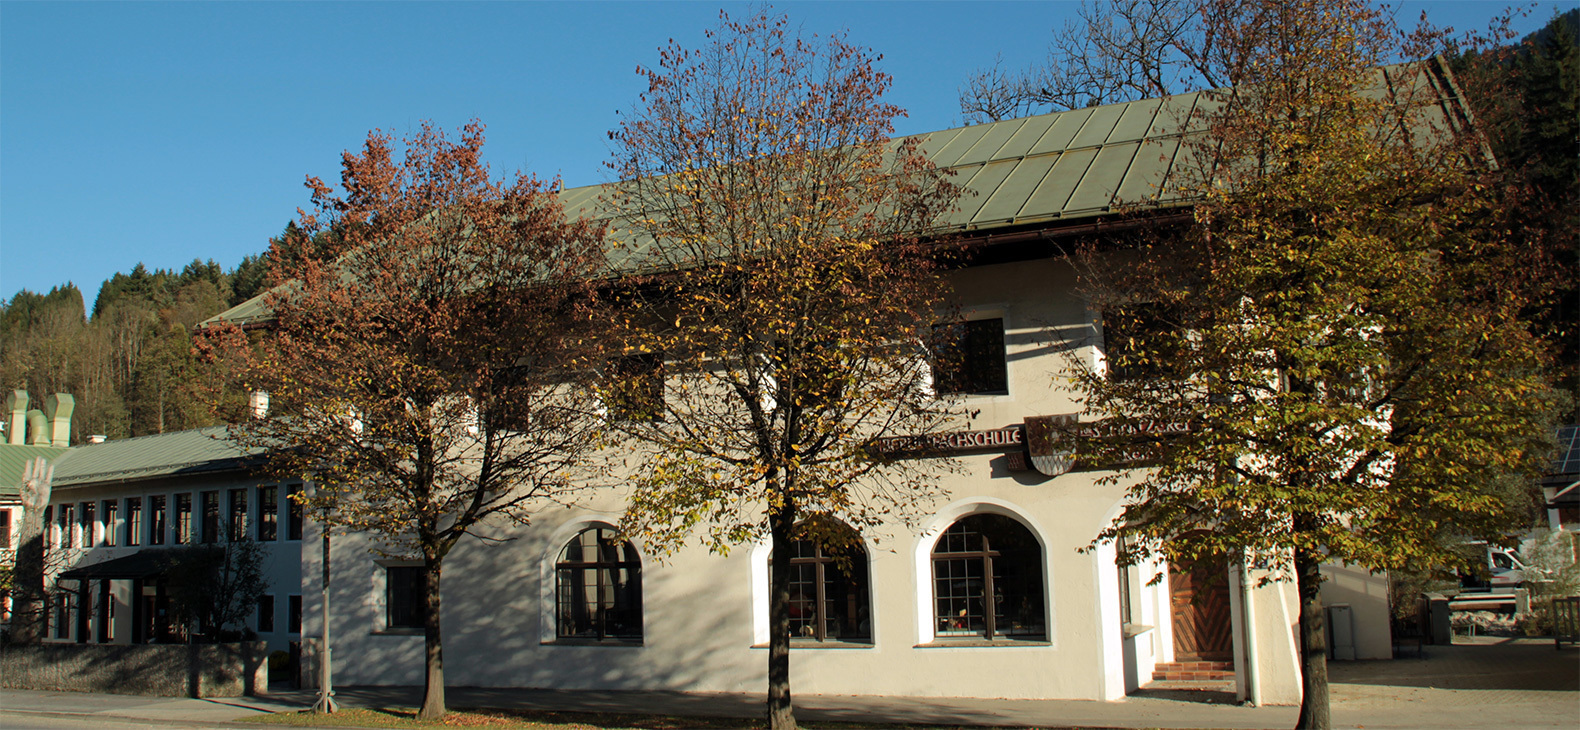 Außenansicht der Berufsfachschule für Holzschnitzerei und Schreinerei in Berchtesgaden: ein traditionelles Gebäude mit Spitzgiebel und Rundbogenfenstern, davor mehrere Bäume.